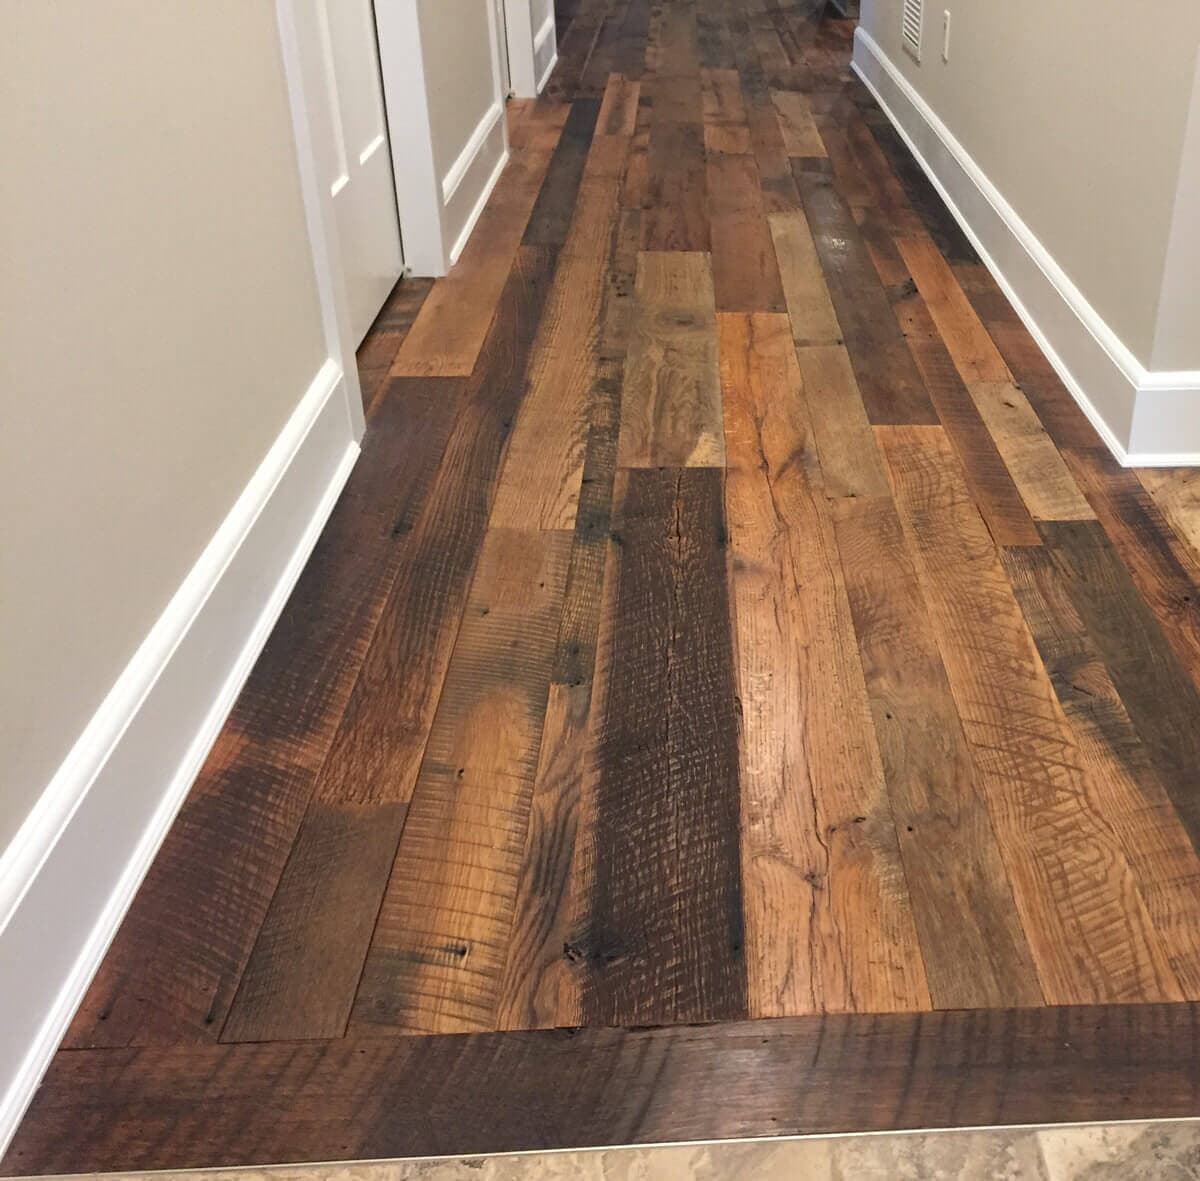 Rustic reclaimed oak flooring in hallway.